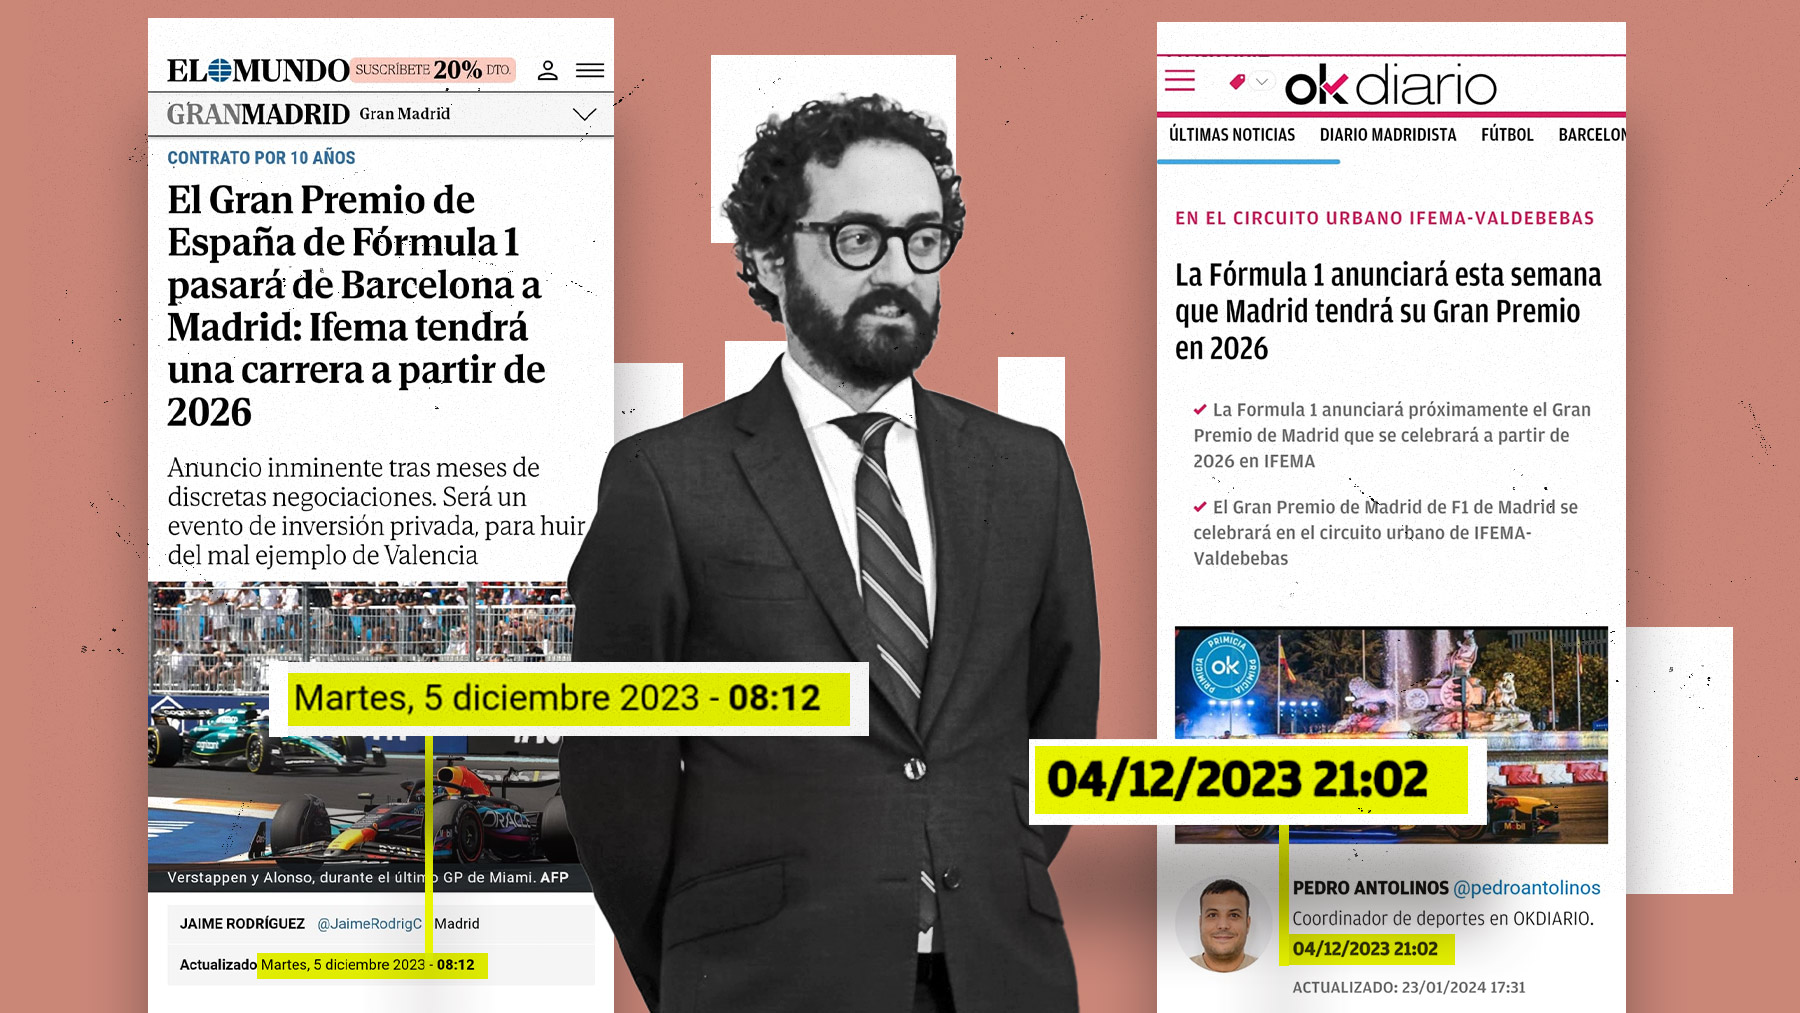 Joaquín Manso, director de El Mundo, contempla las dos exclusivas.